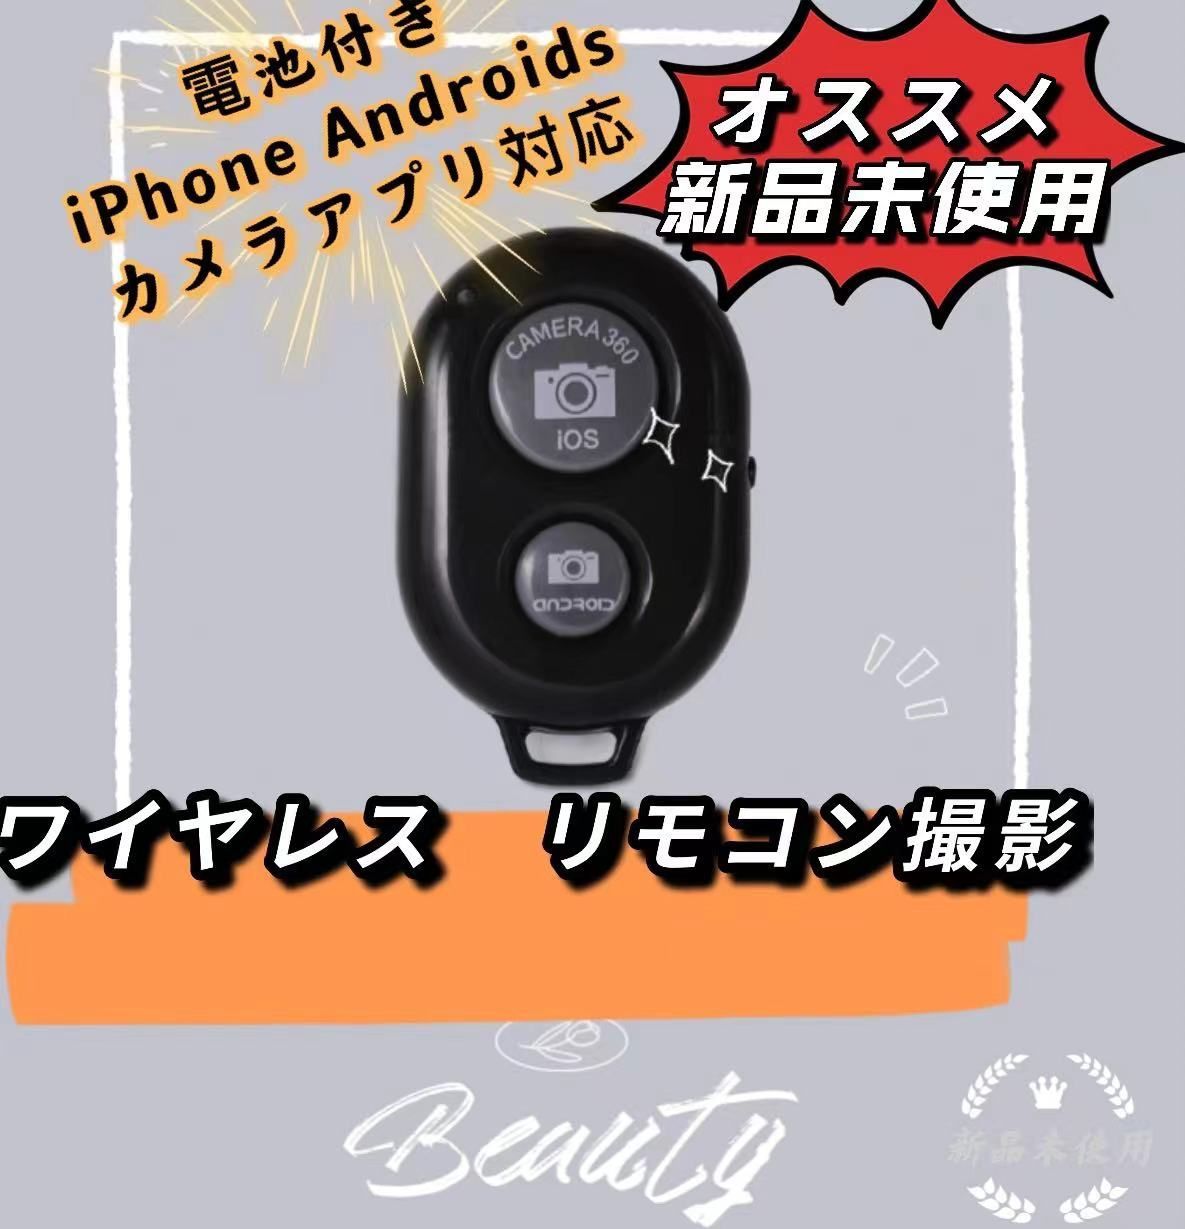 カメラシャッターリモコン Bluetooth ワイヤレス